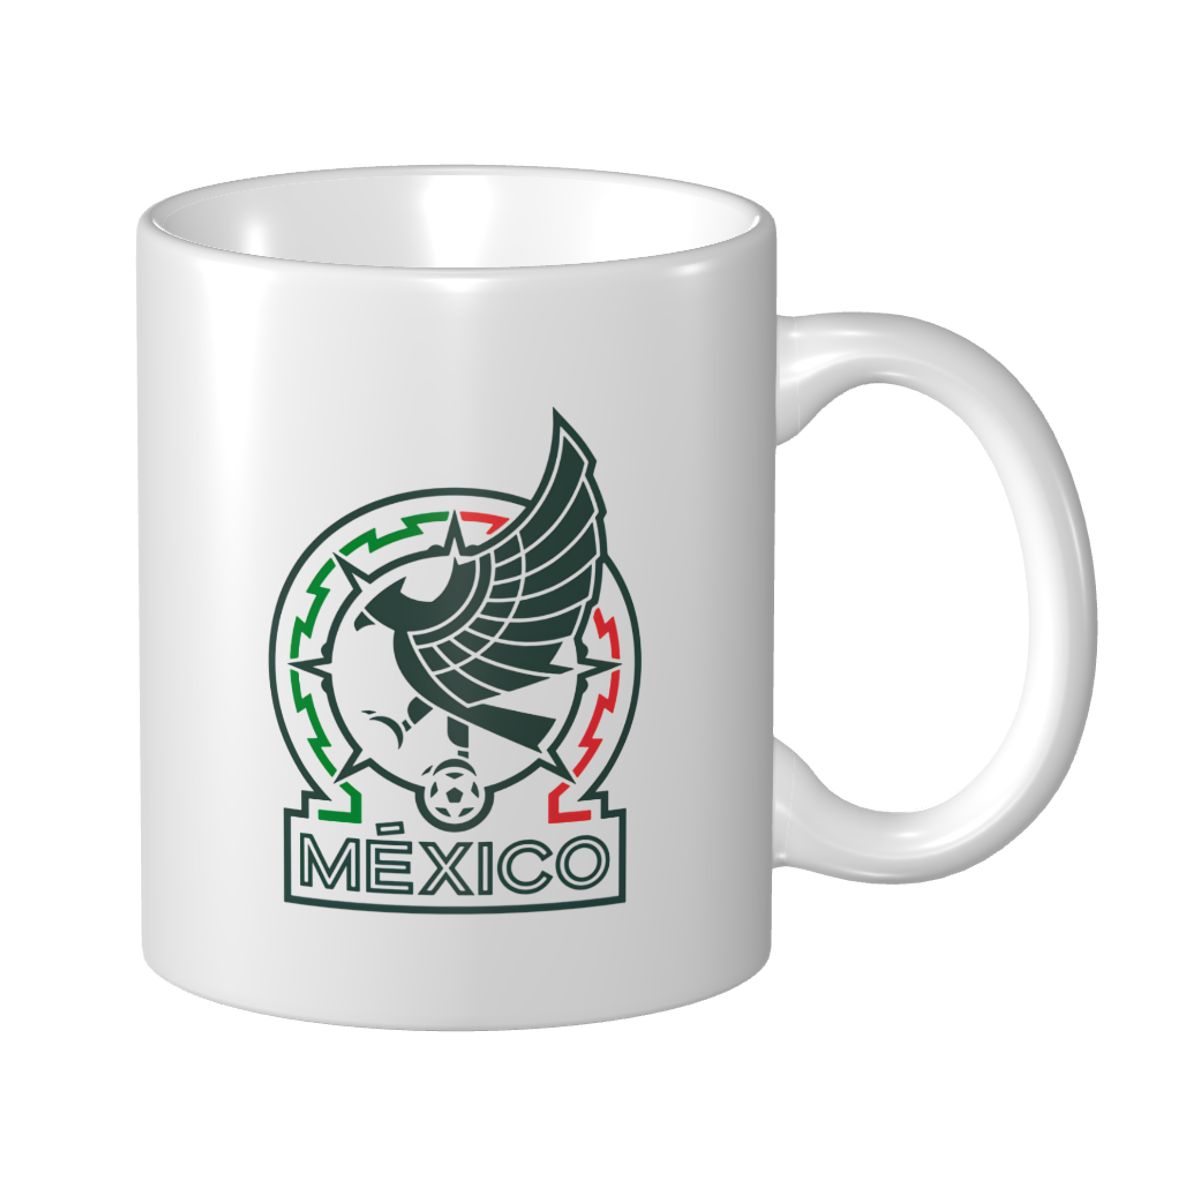 Mexico National Football Team Ceramic Mug